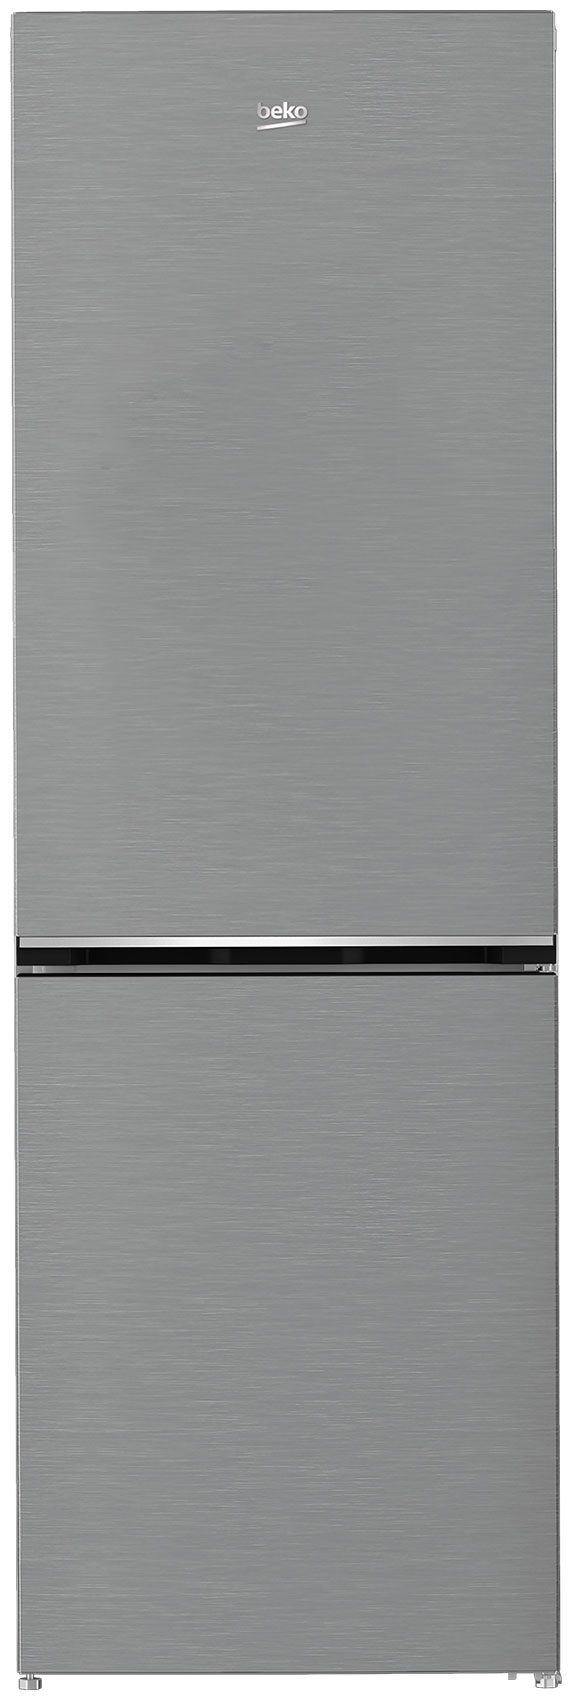 Двухкамерный холодильник Beko B1DRCNK362HX двухкамерный холодильник beko b1rcnk362s